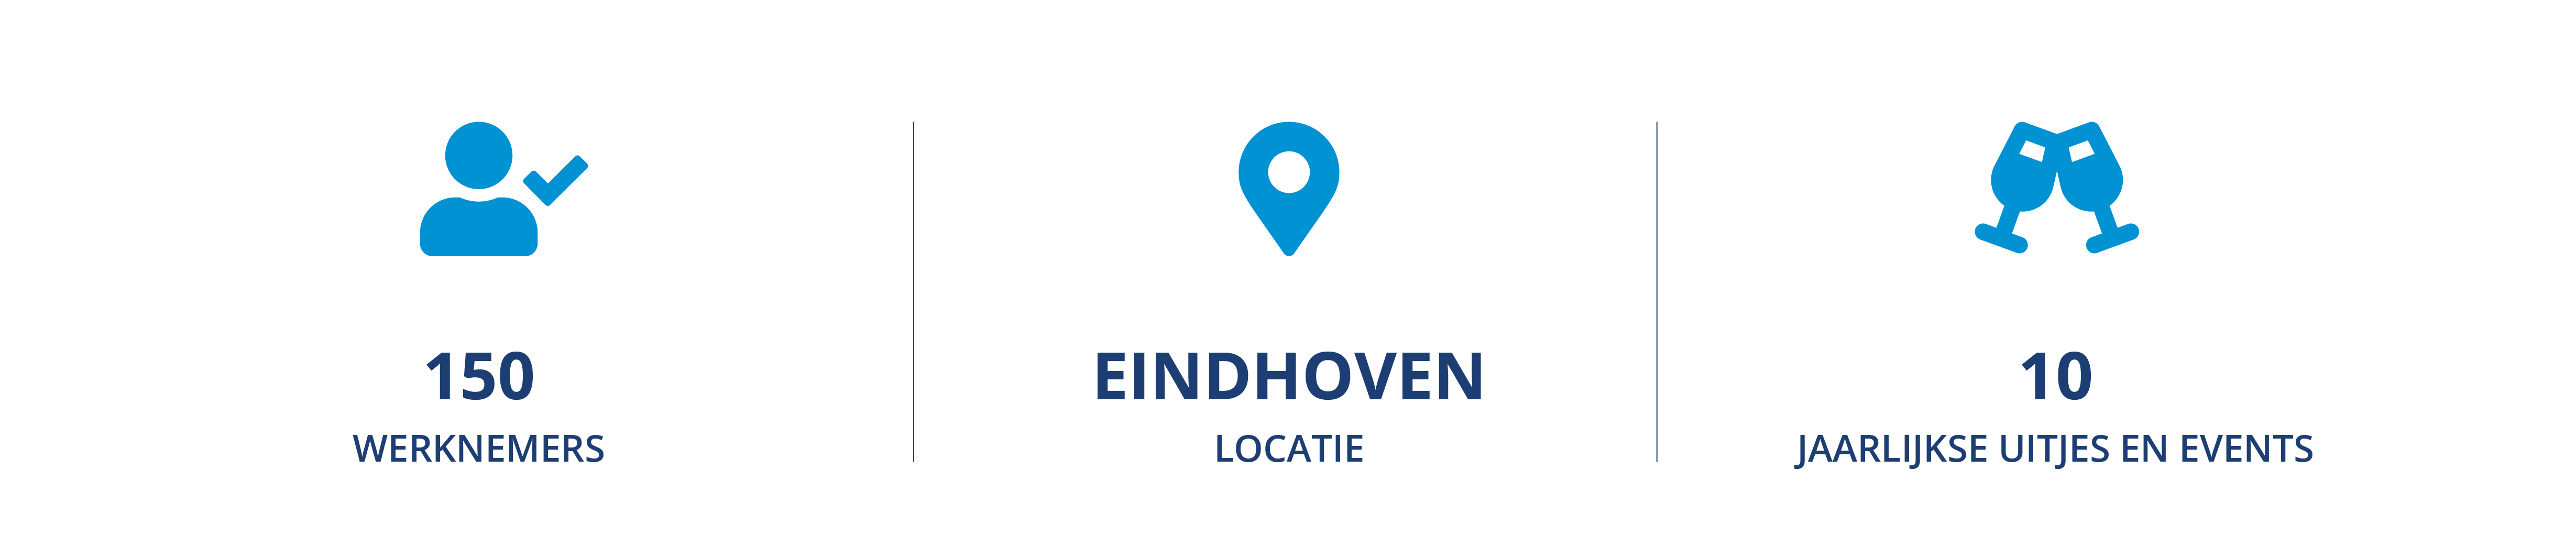 Locatie Eindhoven cijfers